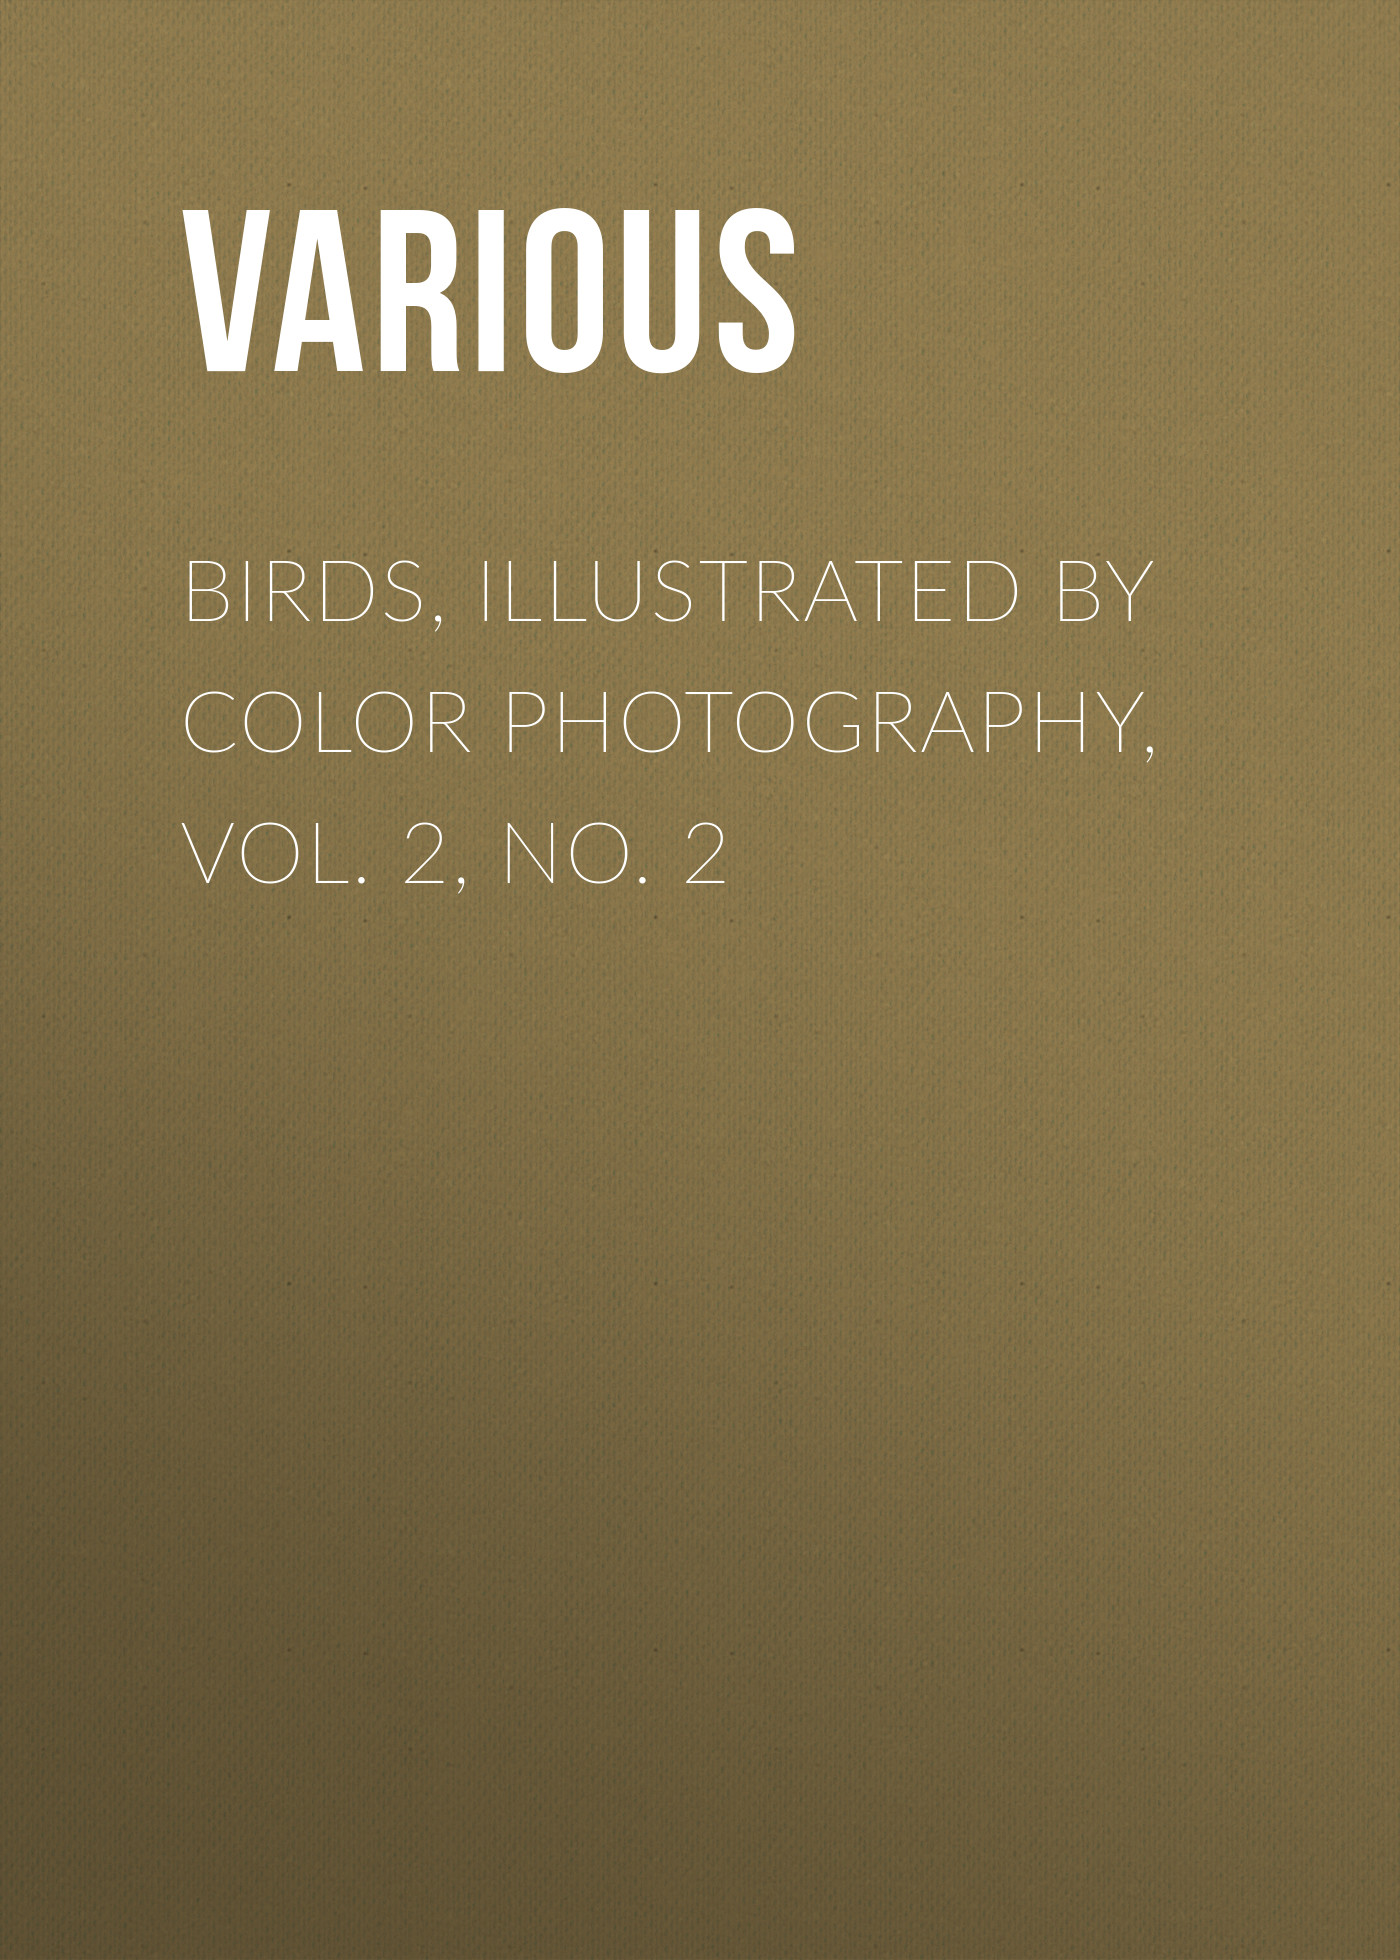 Книга Birds, Illustrated by Color Photography, Vol. 2, No. 2 из серии , созданная  Various, может относится к жанру Журналы, Биология, Природа и животные, Зарубежная образовательная литература. Стоимость электронной книги Birds, Illustrated by Color Photography, Vol. 2, No. 2 с идентификатором 25570879 составляет 0 руб.